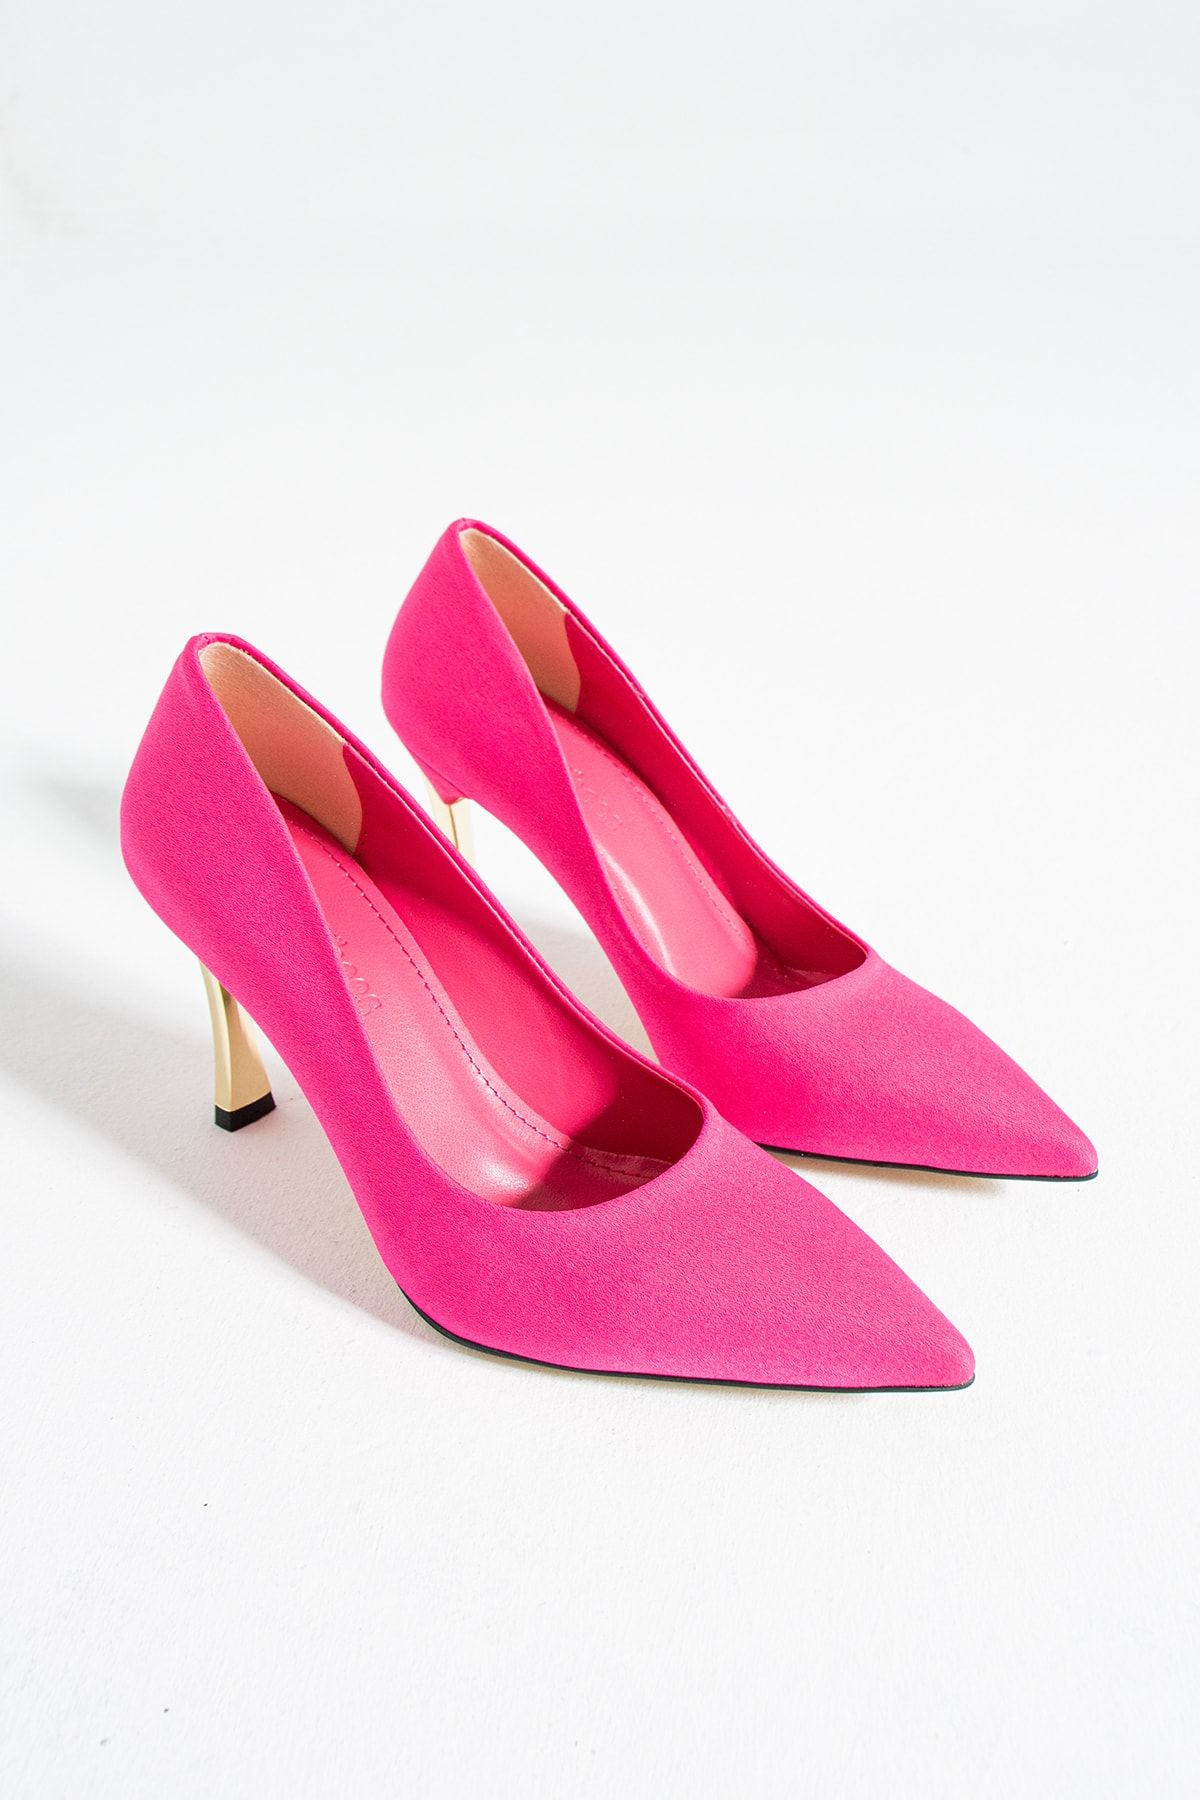 Güllü Shoes Kadın Topuklu Ayakkabı - Yüksek Topuklu Stiletto Rahat Şık Ve Ince Iş Ayakkabısı Fuşya Renk 9 Cm